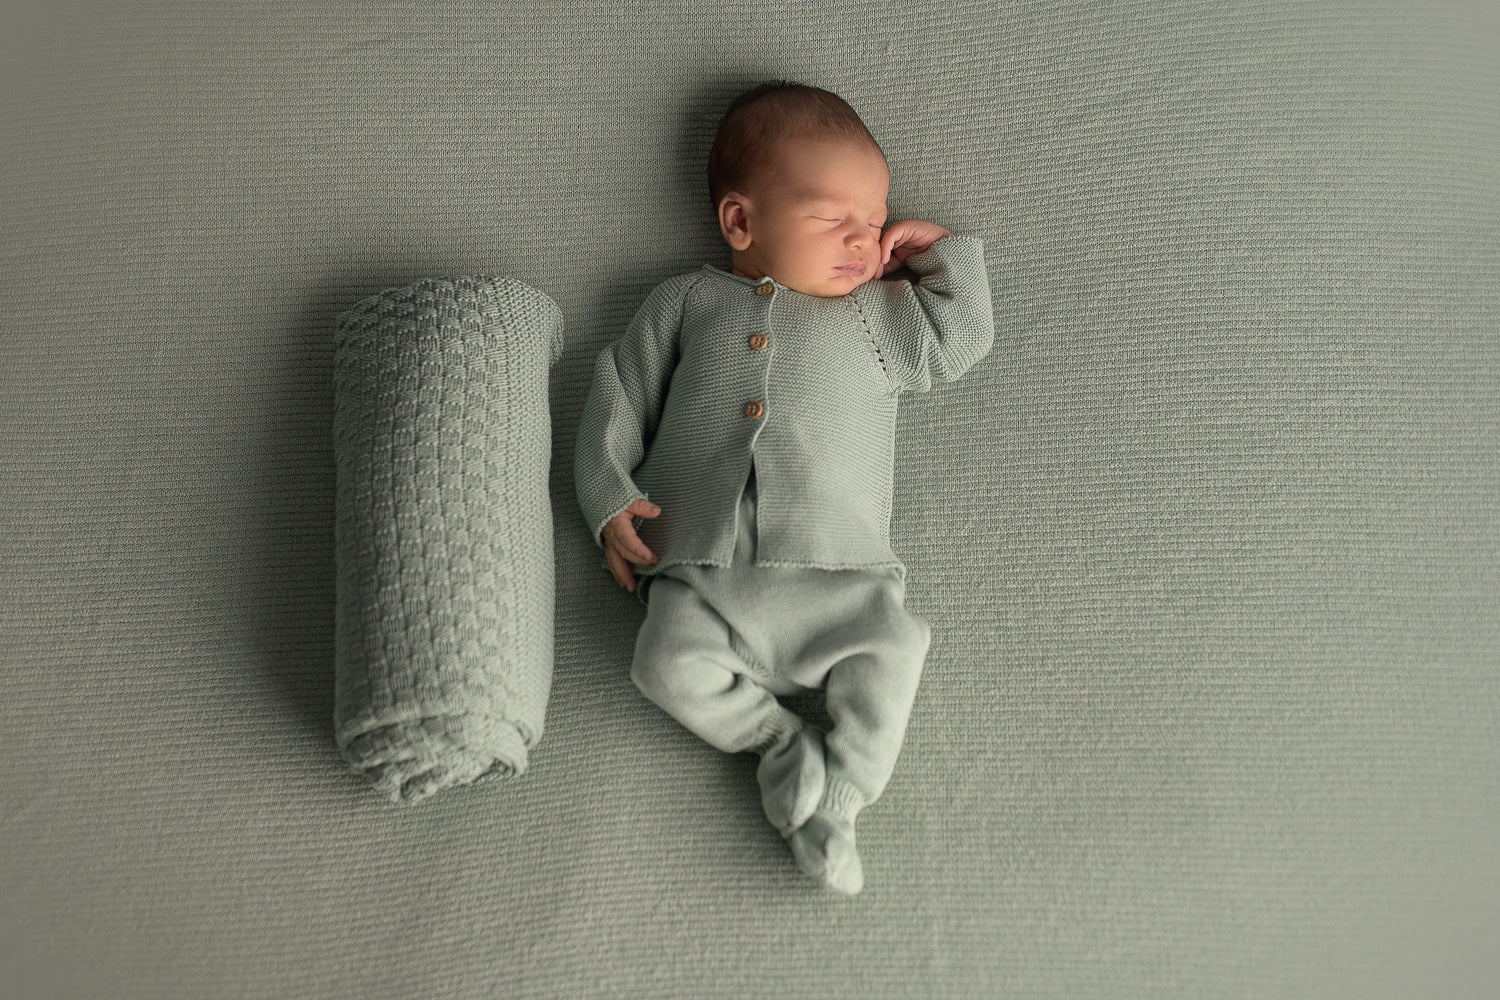 Superzachte en comfortabele newborn babypakjes van 100%biologisch katoen. 